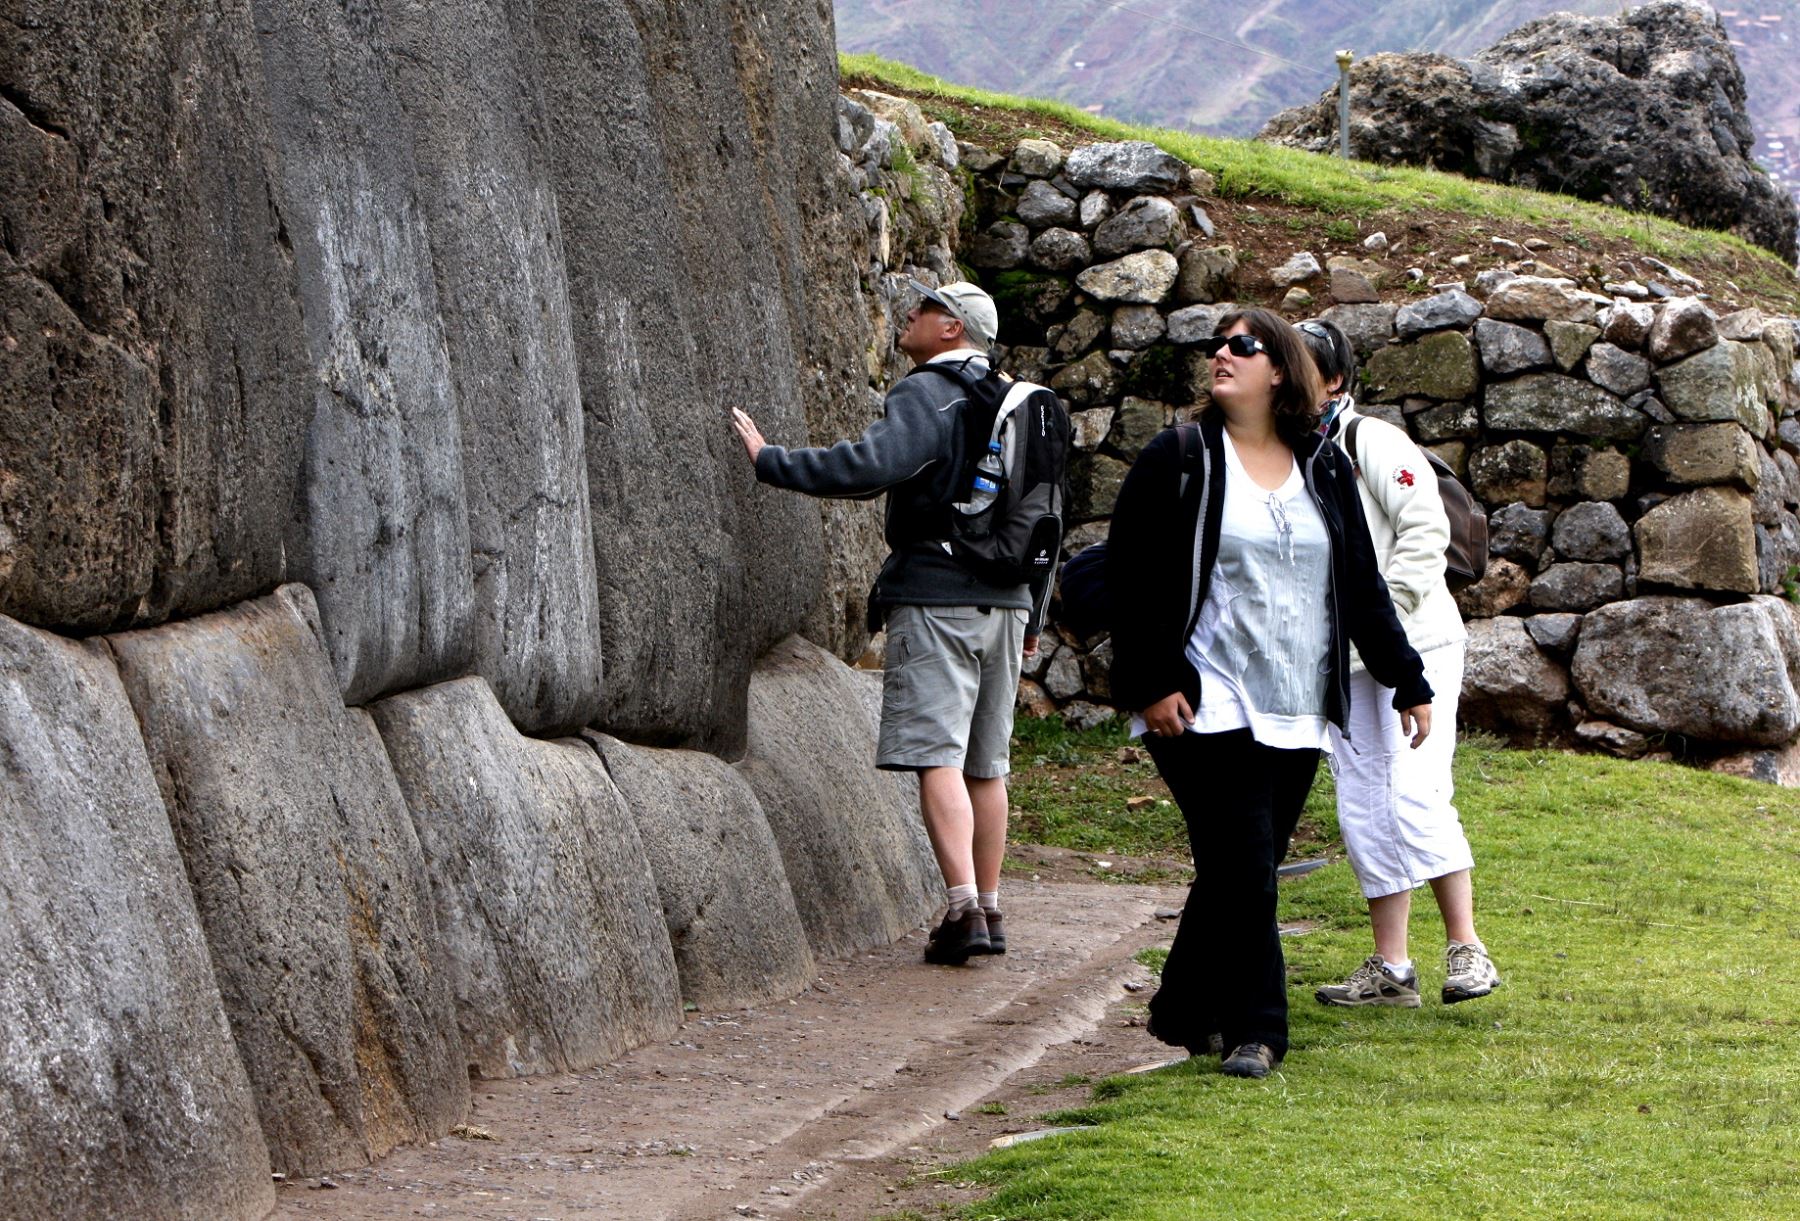 La construcción más resaltante es la Fortaleza de Sacsayhuamán, un recinto increíble donde es posible observar gigantes bloques de piedra en sus muros. Foto: ANDINA/Percy Hurtado